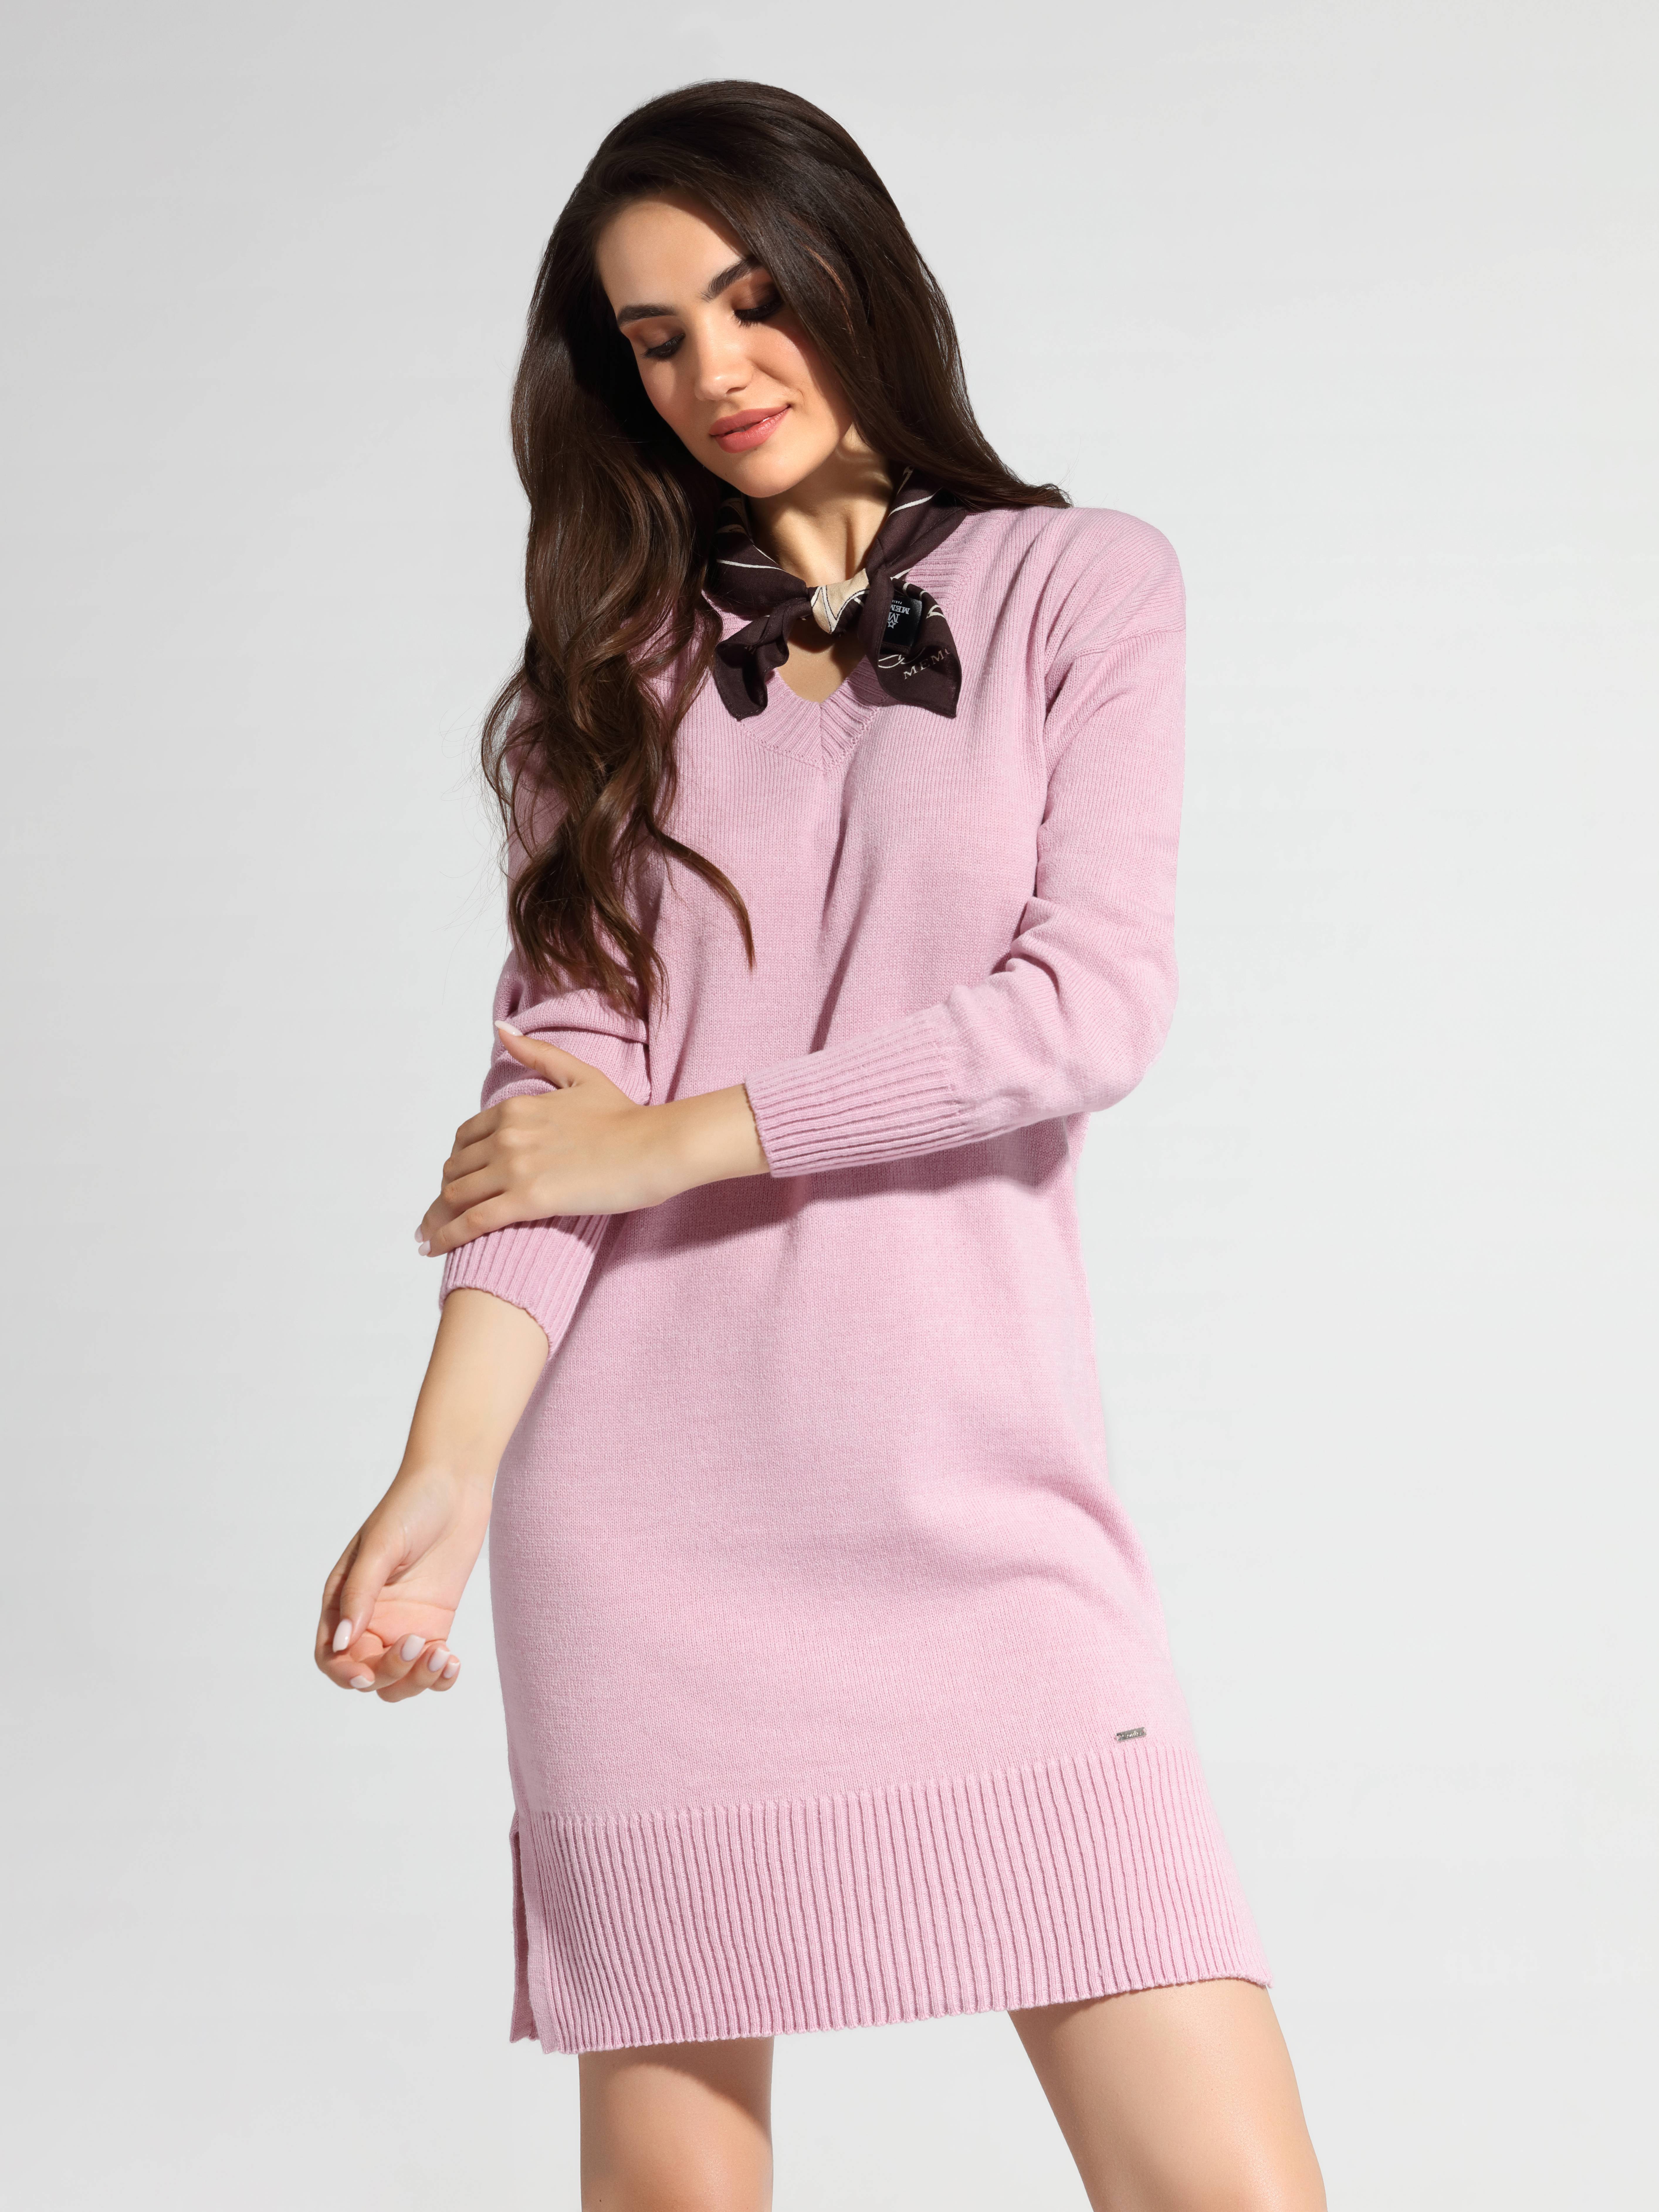 Ультракомфортное платье из итальянской пряжи с мериносовой шерстью LDK 072 Conte ⭐️, цвет wild rose, размер 170-84-90 - фото 1